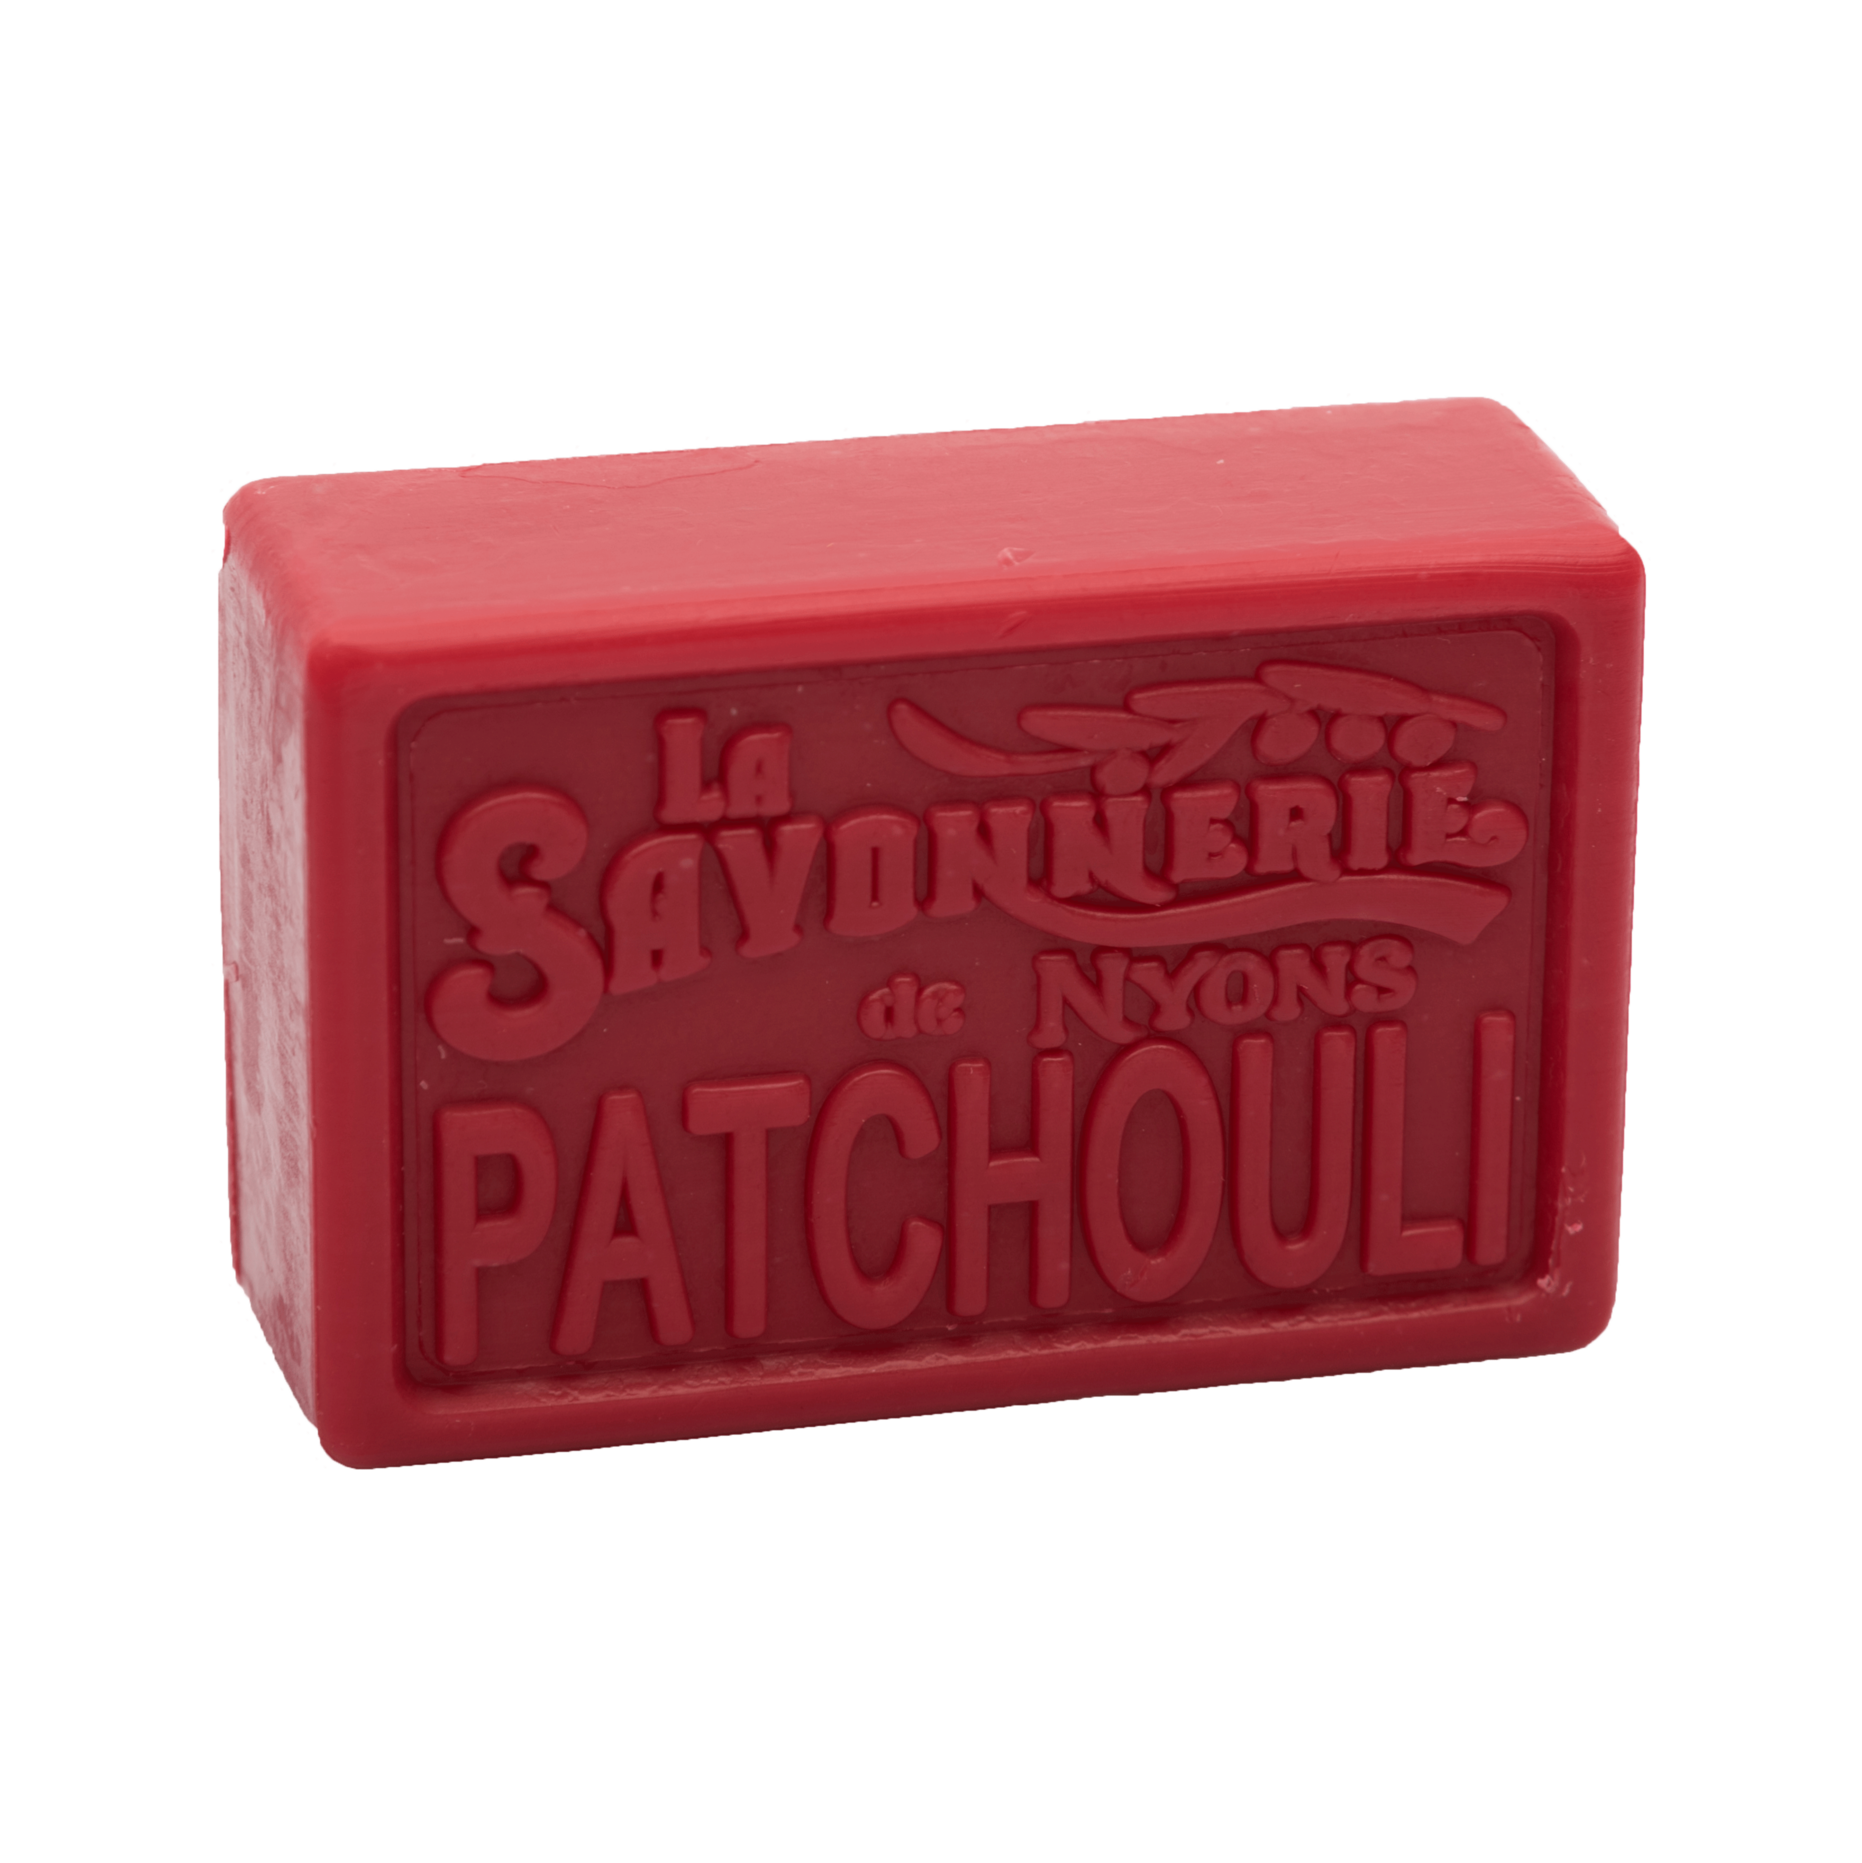 Red bar of soap reading La Savonnerie de Nyons Patchouli.